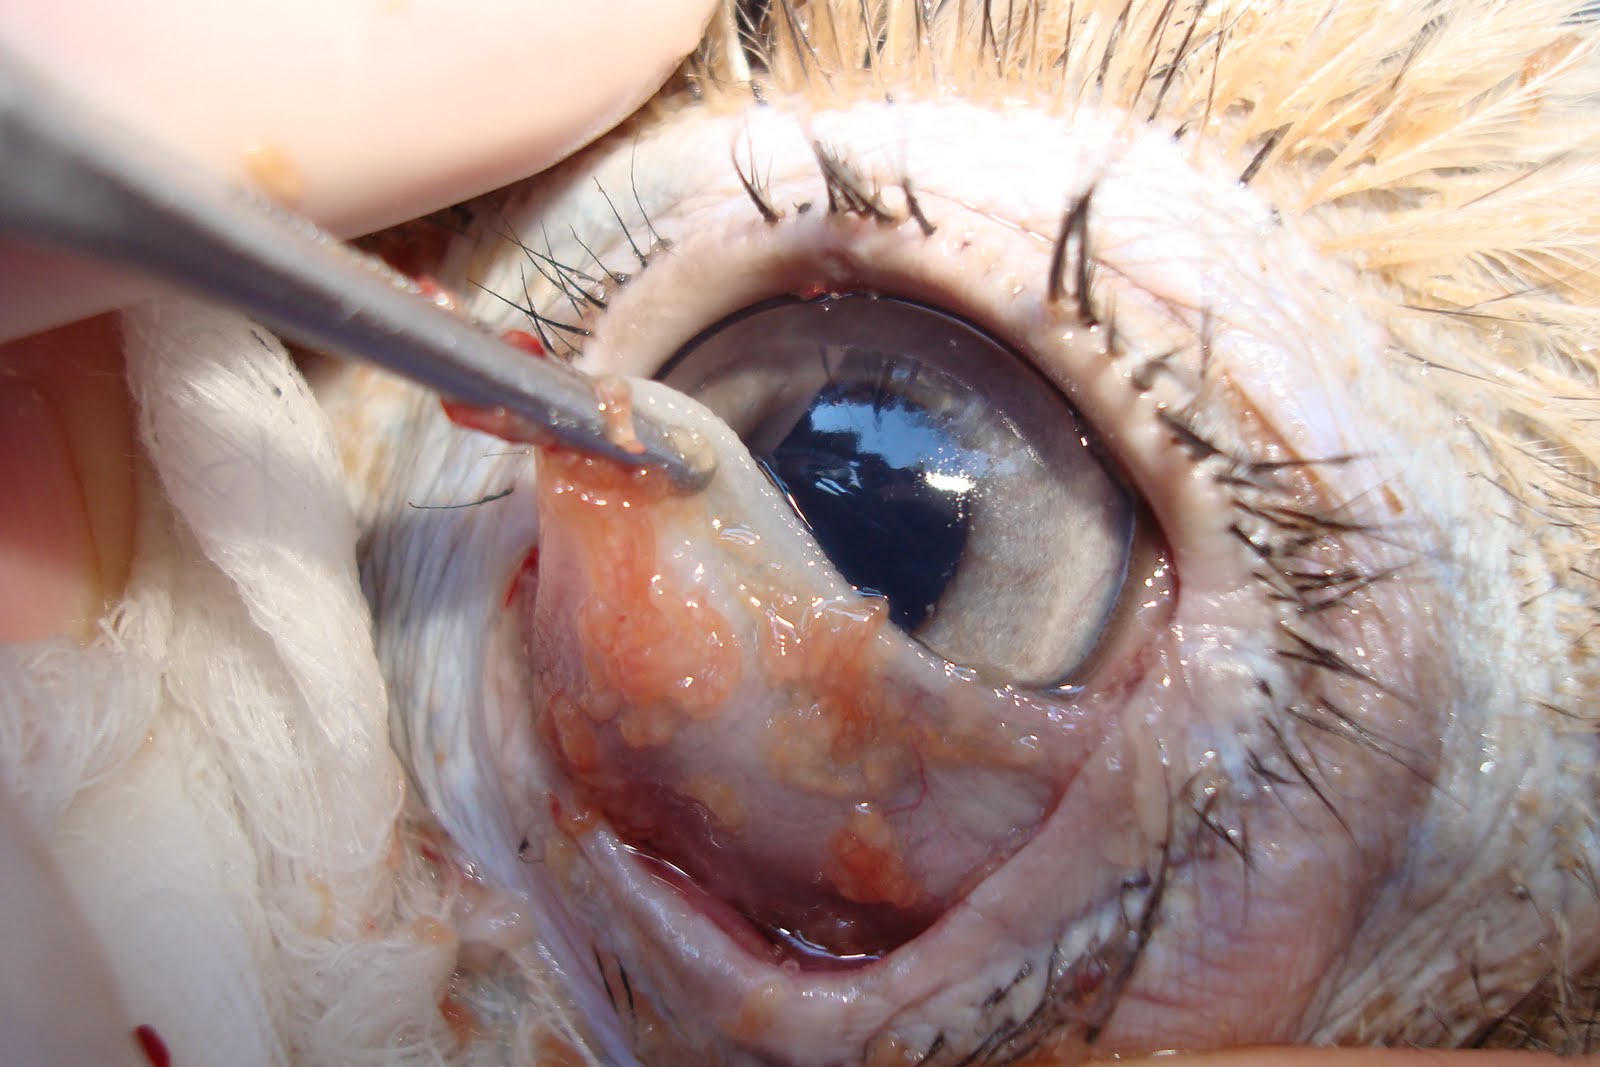 parasite in human eye